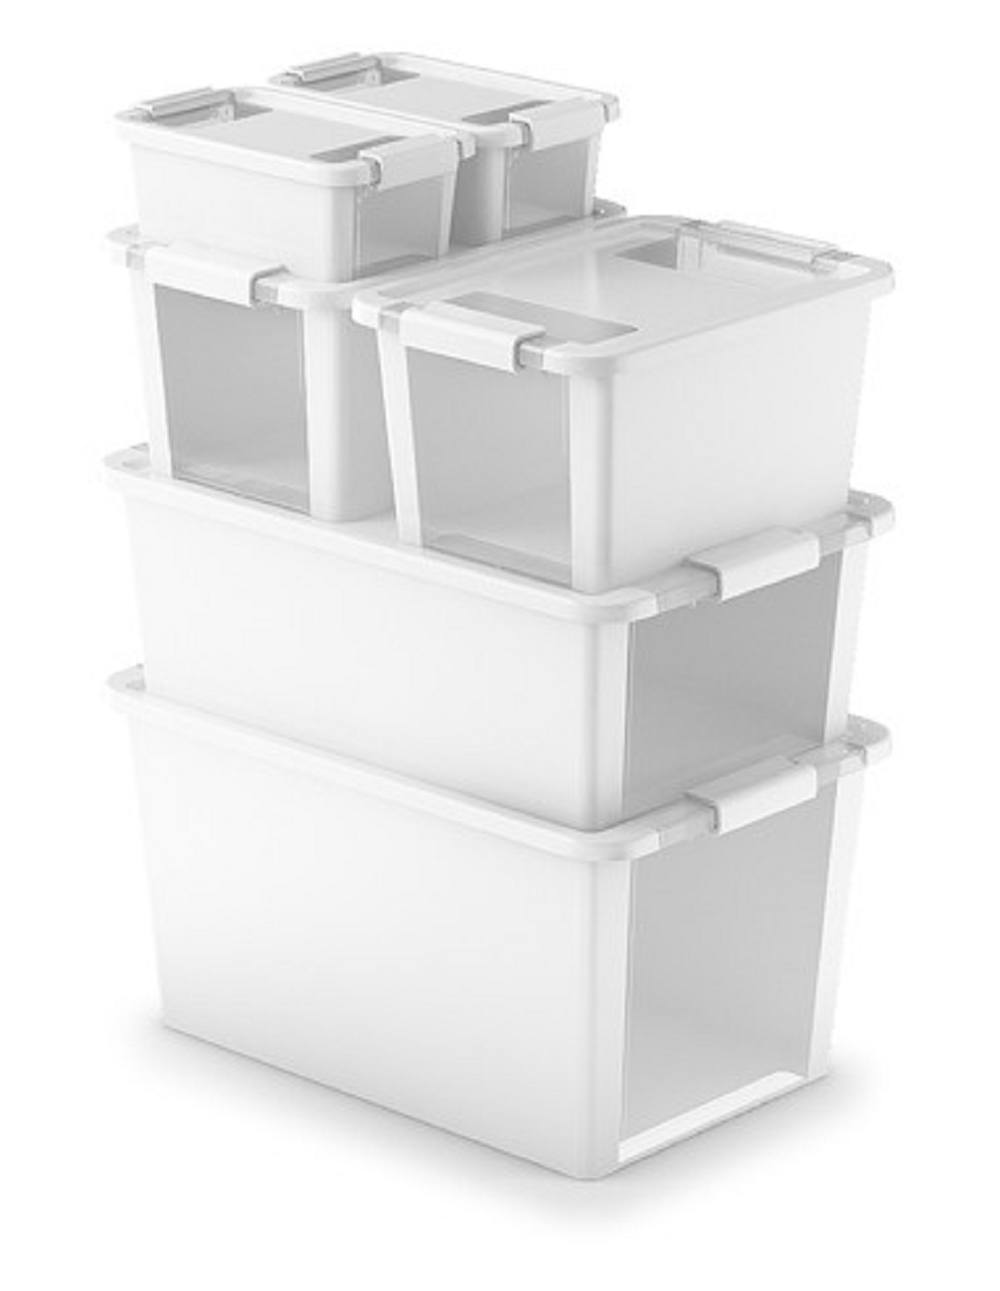 Mehrzweck Aufbewahrungsbehälter STORAGE mit Deckel | HxBxT 19x55x35cm | 26 Liter | Weiß | Behälter, Box, Aufbewahrungsbehälter, Aufbewahrungsbox